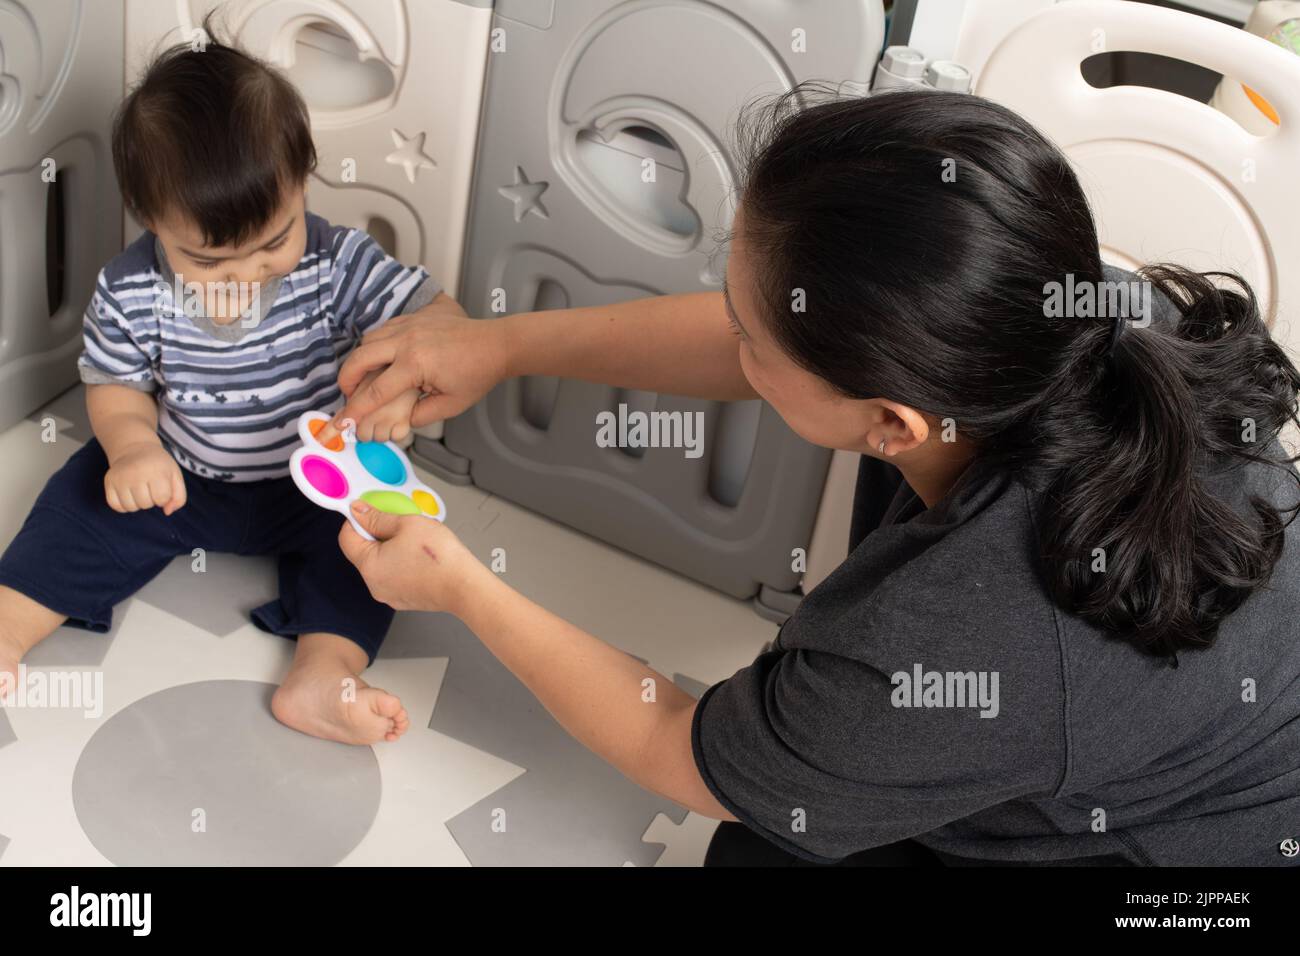 bébé garçon de 11 mois à la maison avec une mère intéressée comme elle utilise son doigt pour presser nouveau jouet, lui montrant comment ça fonctionne Banque D'Images